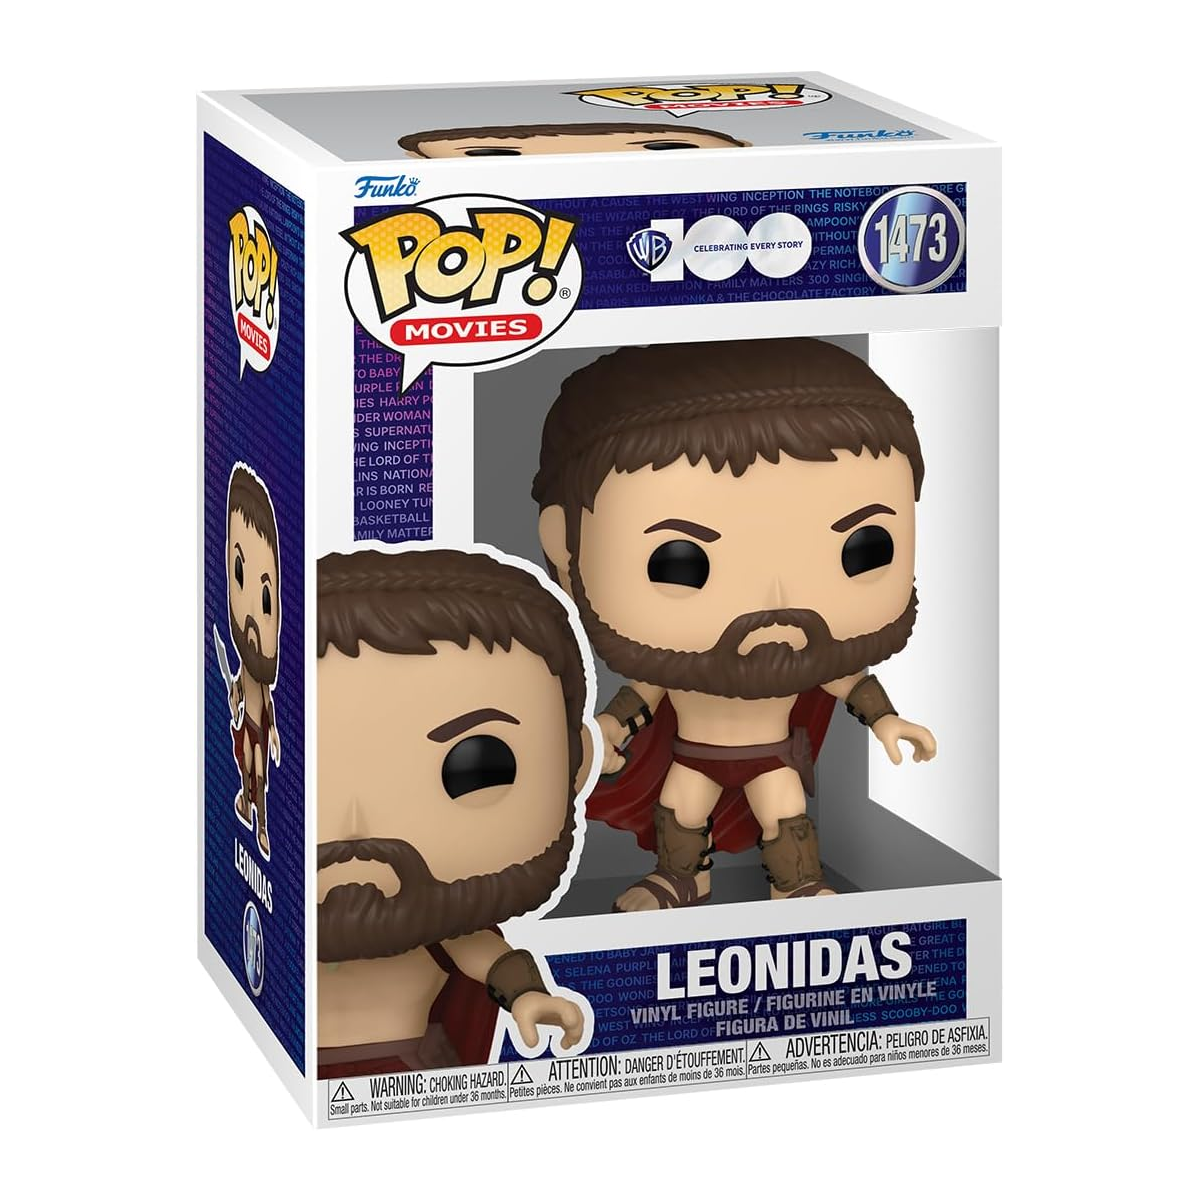 300 - Leonidas (1473)